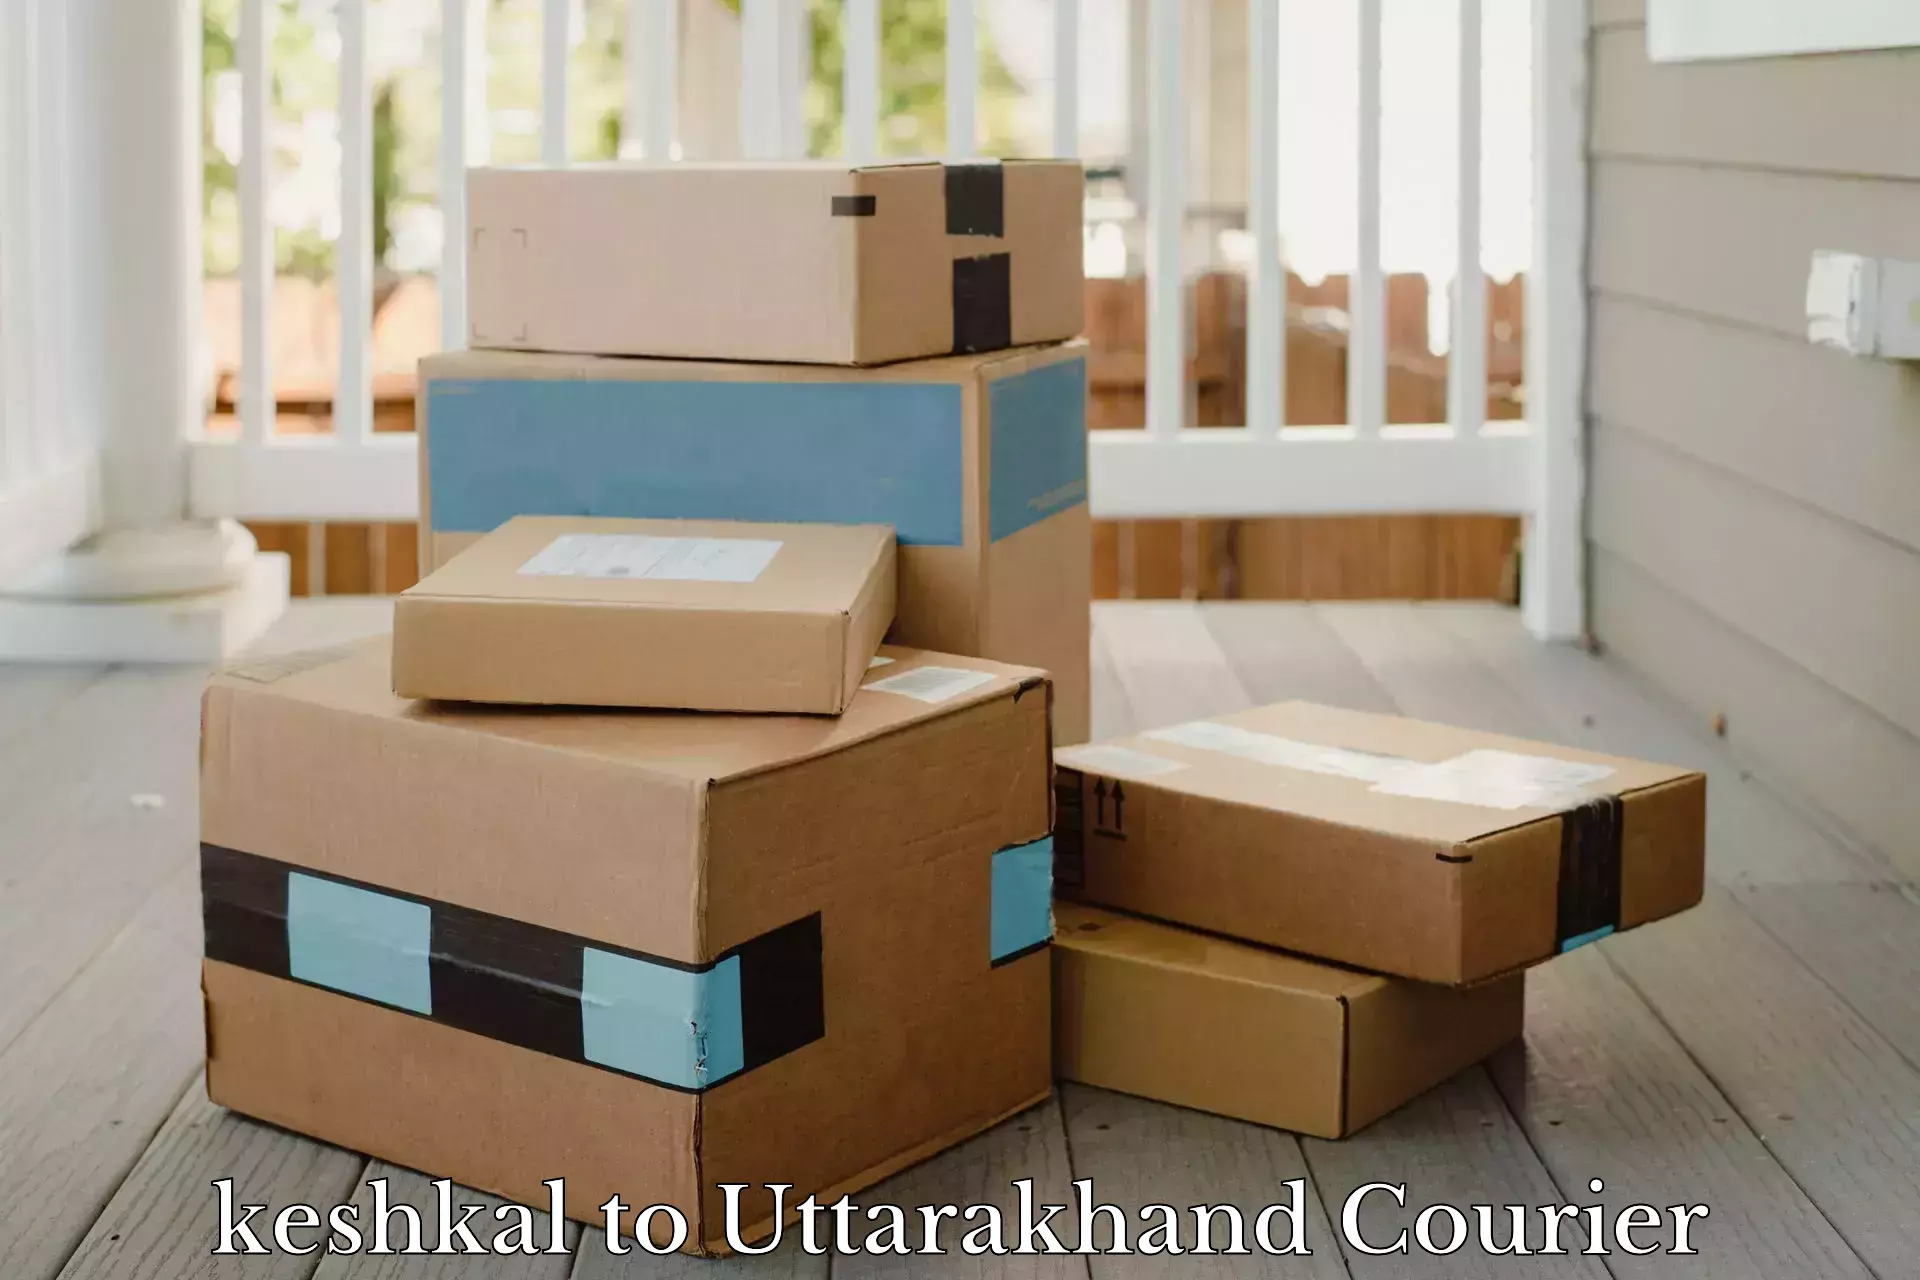 Affordable parcel service keshkal to Kashipur